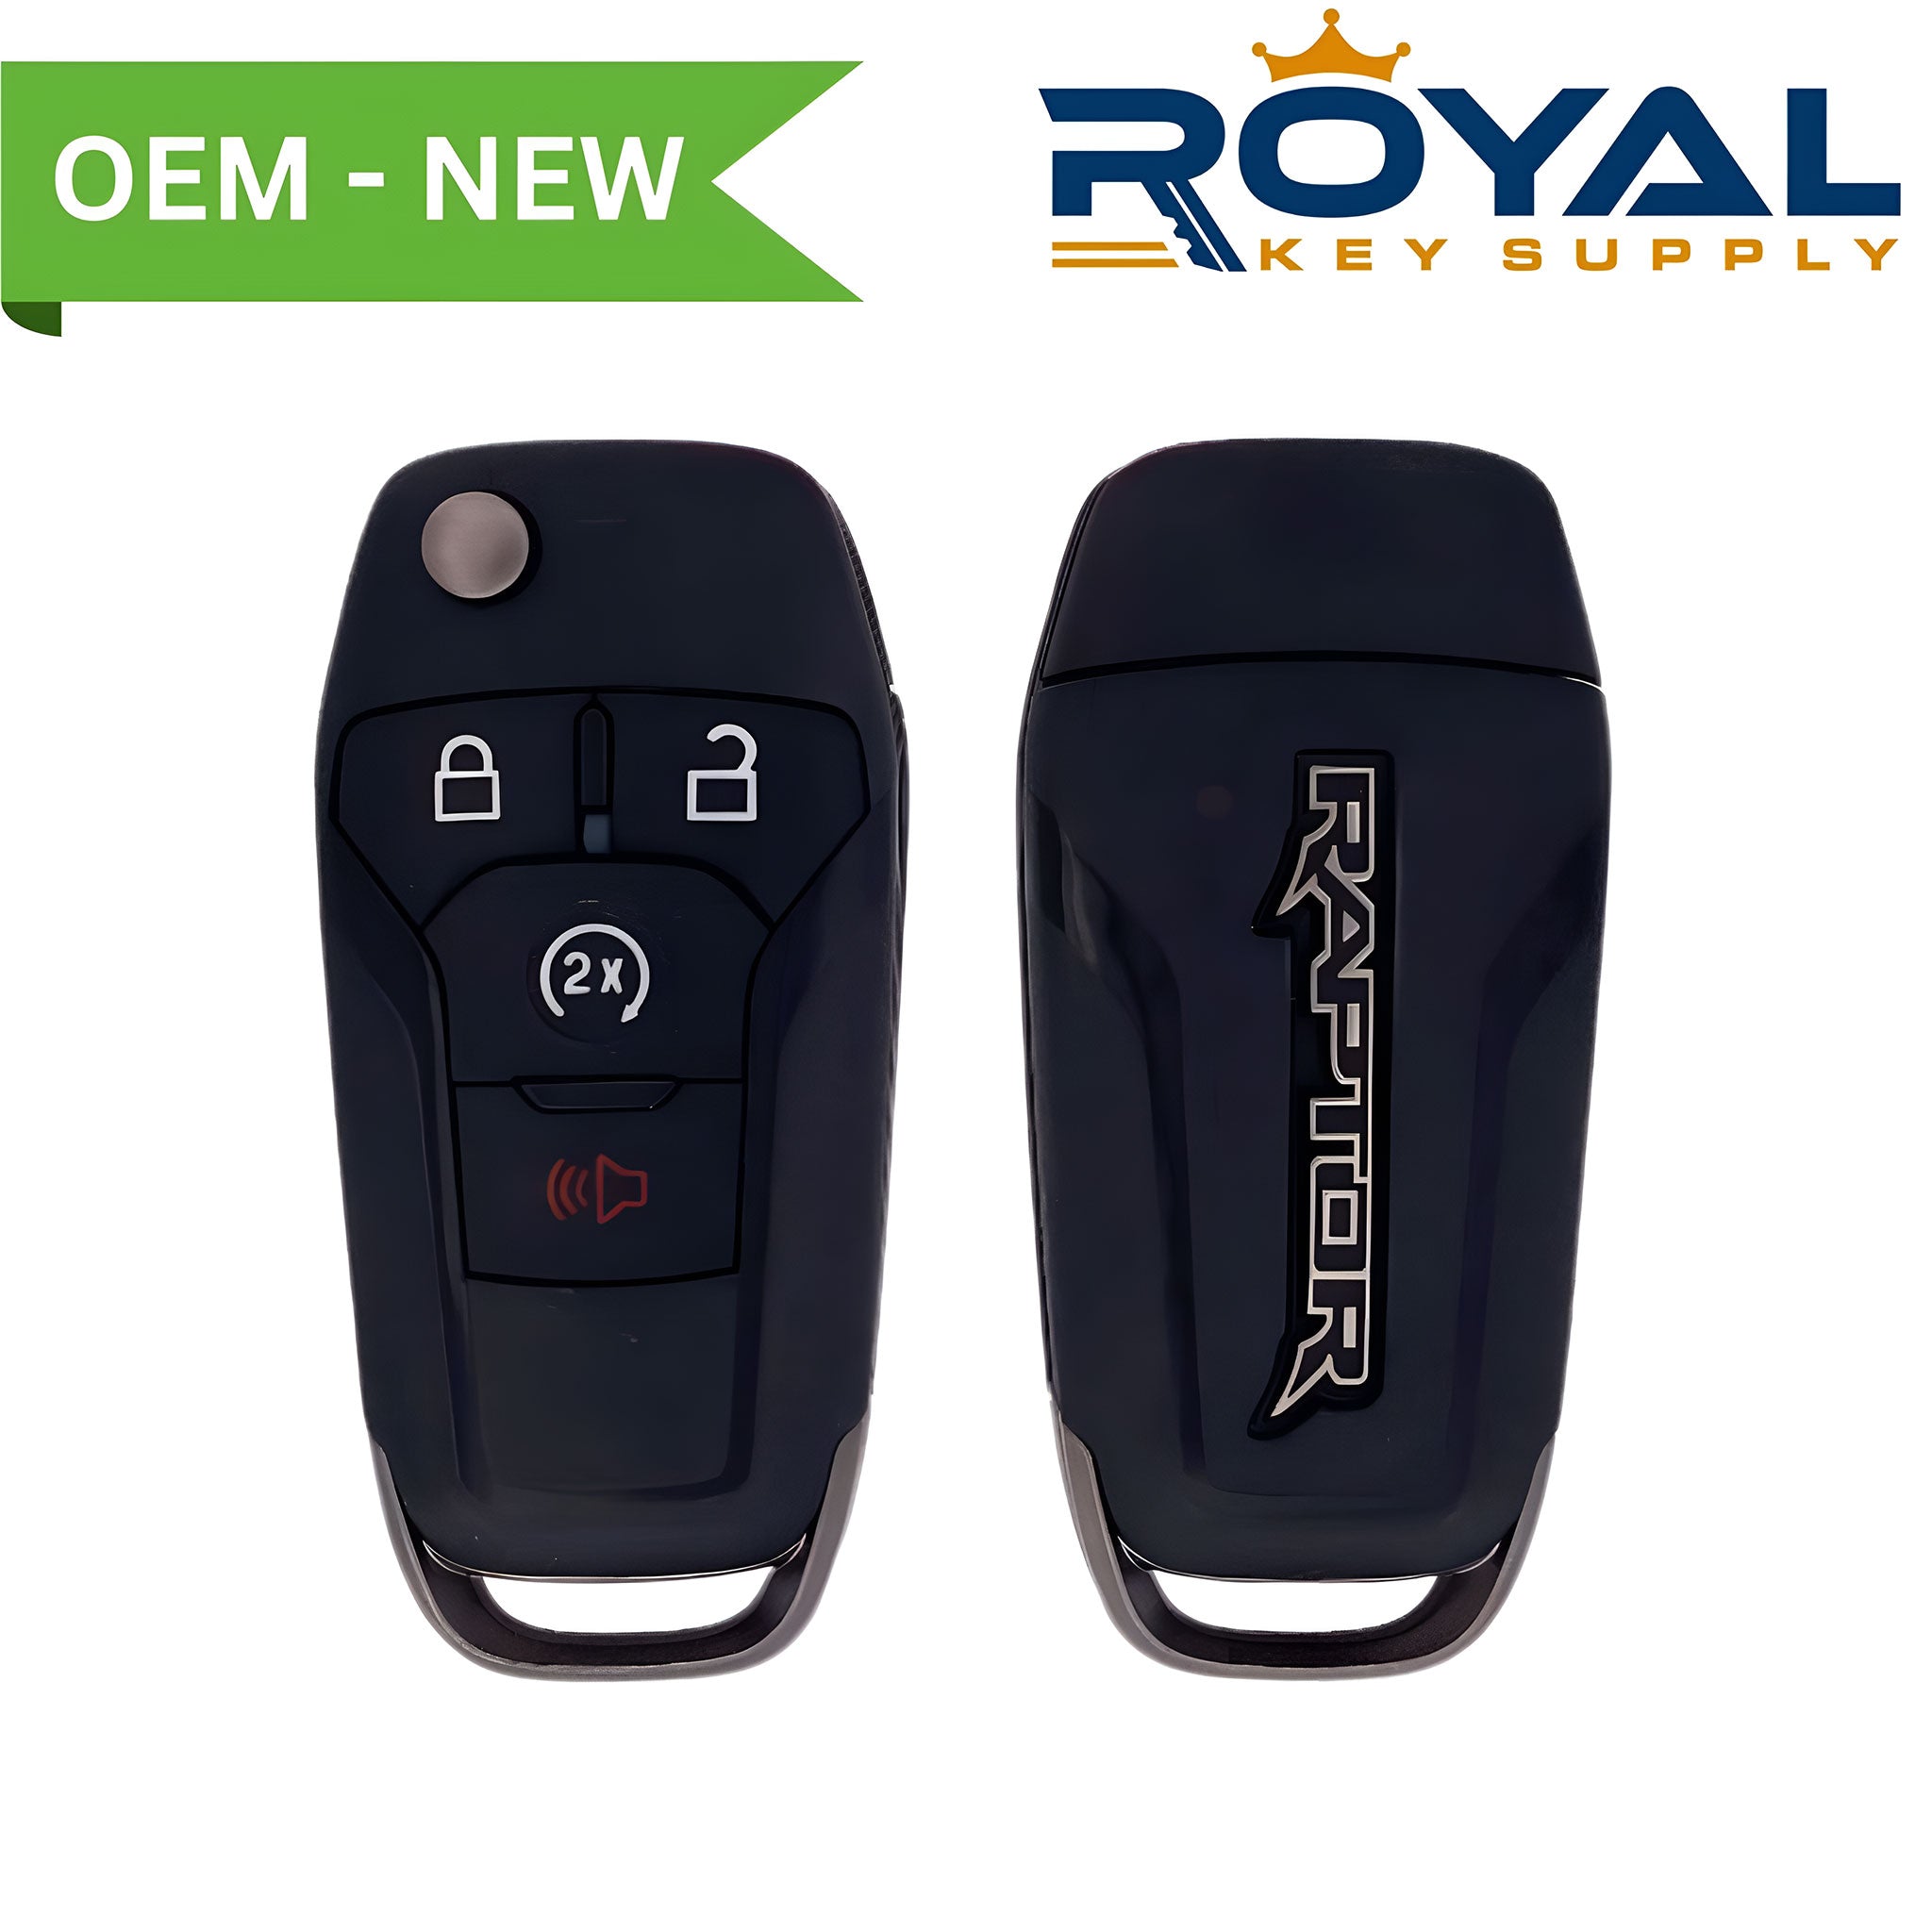 Ford New OEM 2018-2020 F-150 (Raptor Logo) Remote Flip Key 4B Remote Start FCCID: N5F-A08TDA PN# 164-R8189, 5933454 - Royal Key Supply